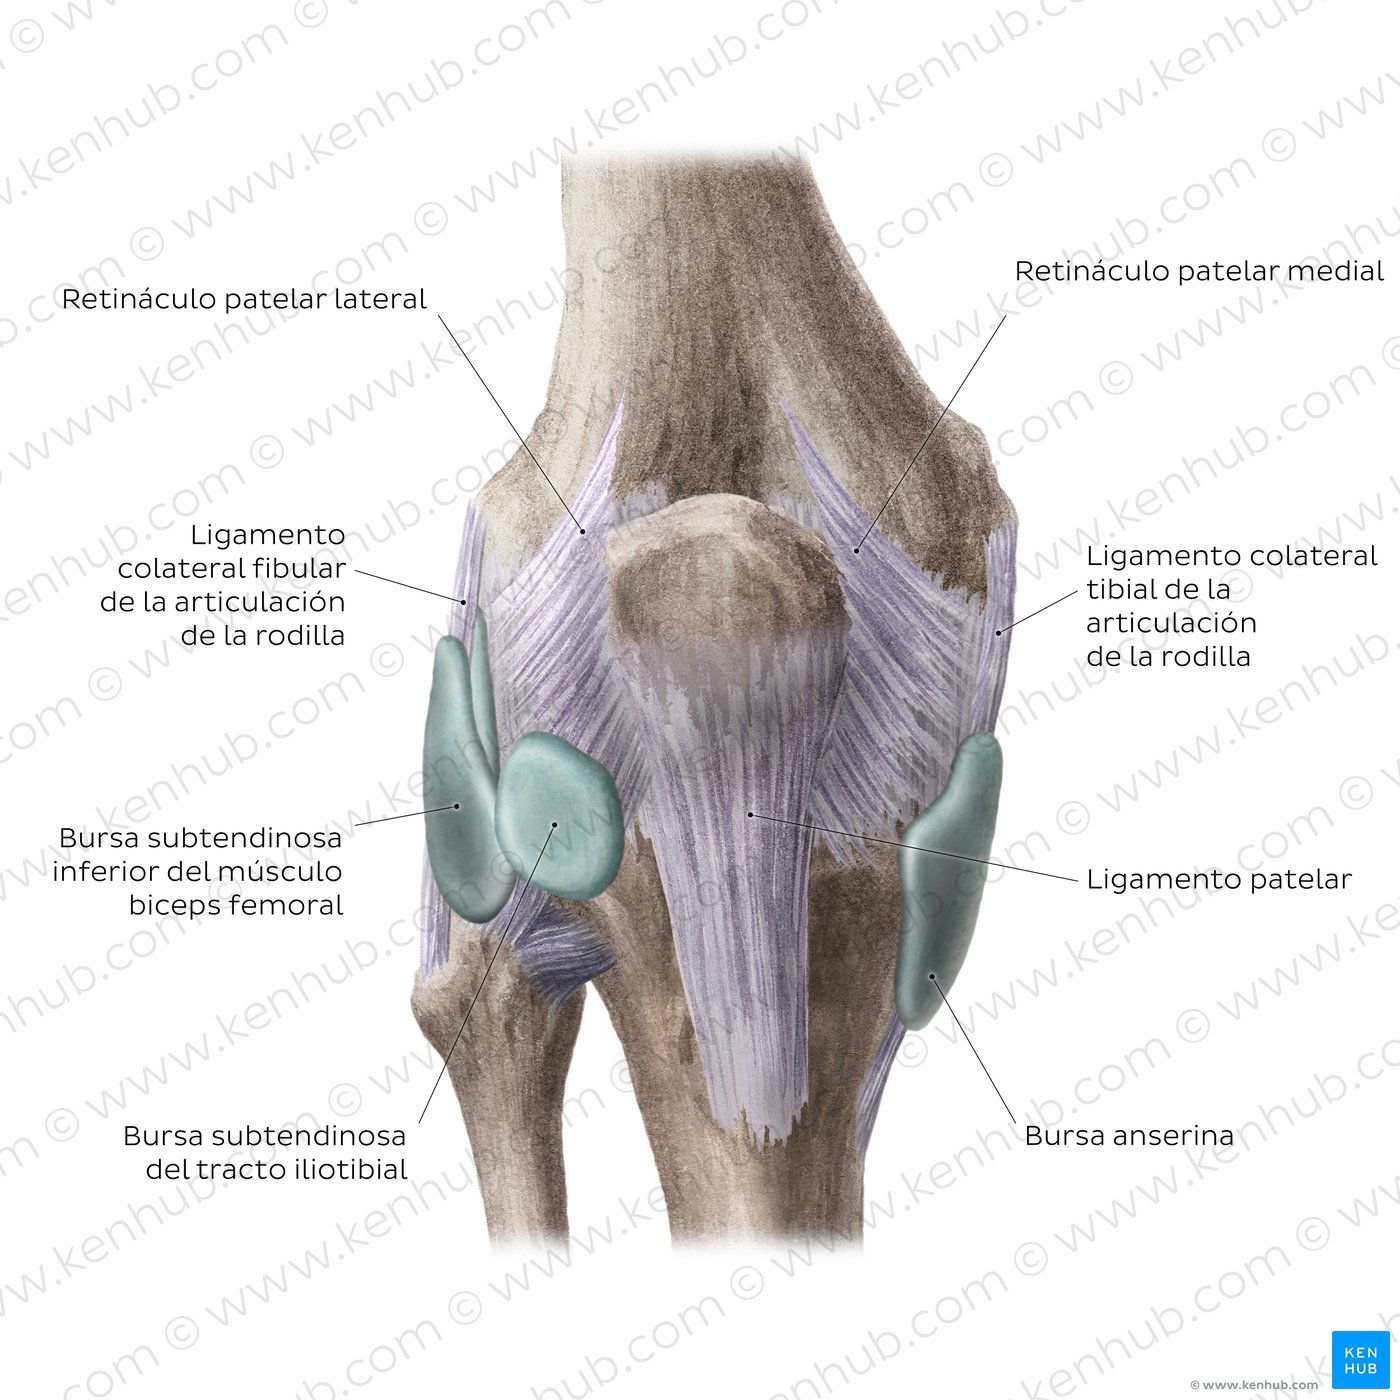 Articulación de la rodilla: Bursas y ligamentos extracapsulares (vista anterior)